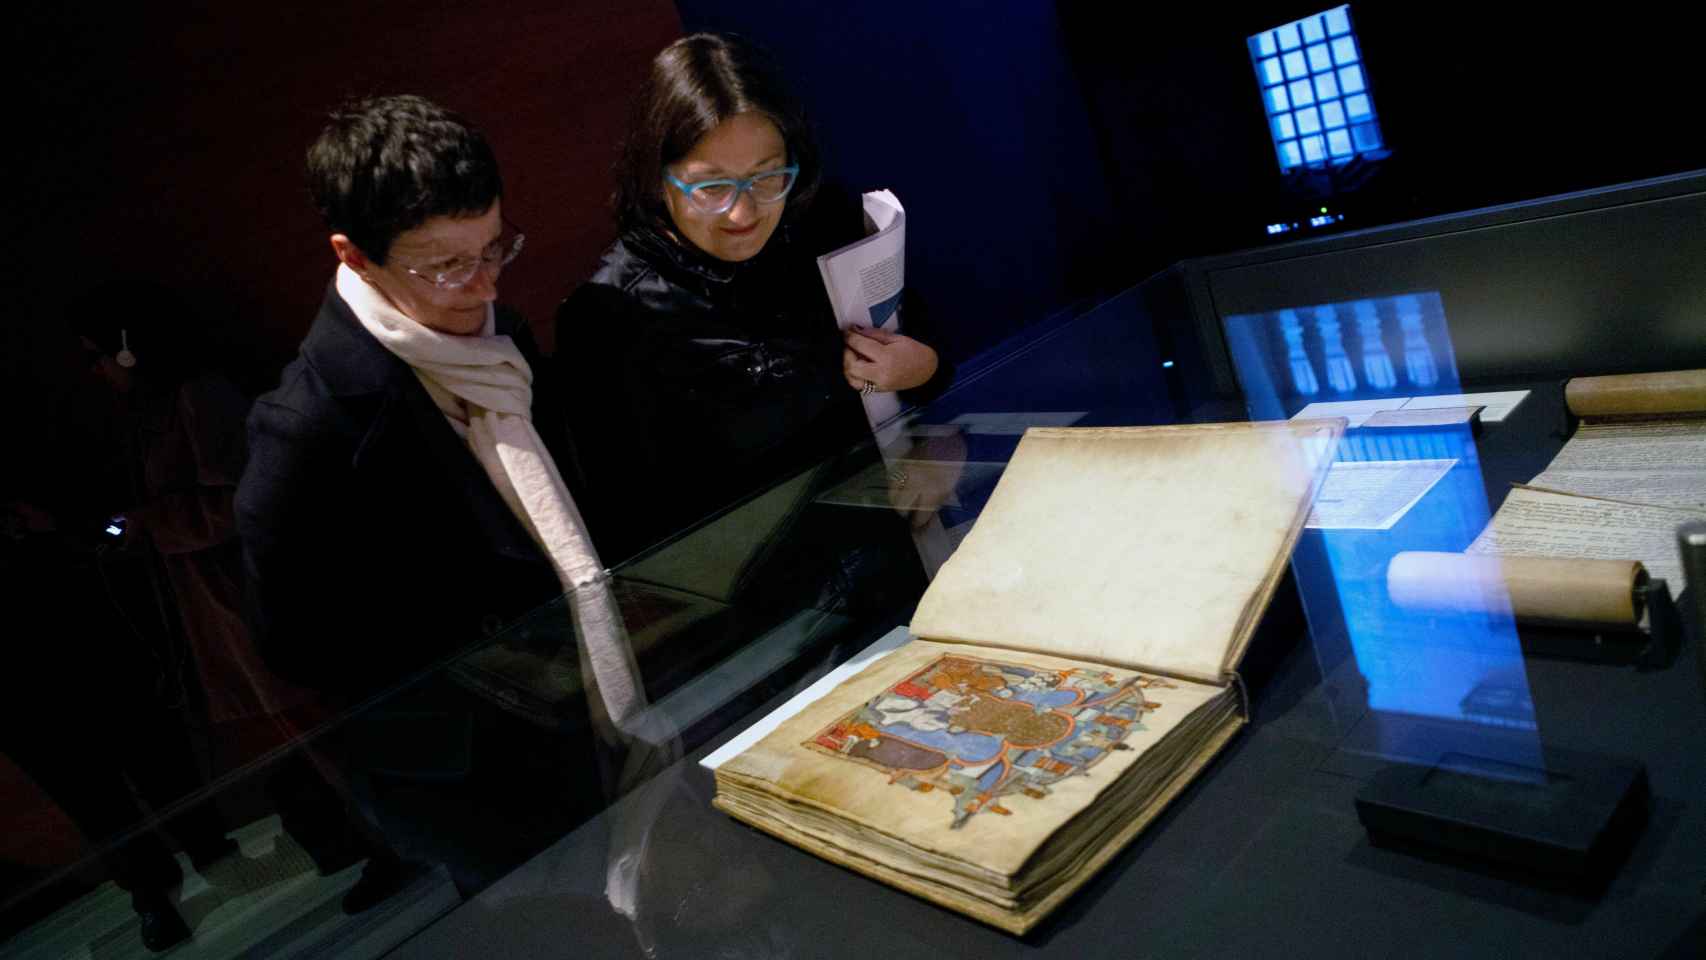 Dos visitantes observan el Gran Libro de los Feudos, un cartulario de documentos relativos a las relaciones feudales de los reyes de Aragón y condes de Barcelona en la Alta Edad Media.